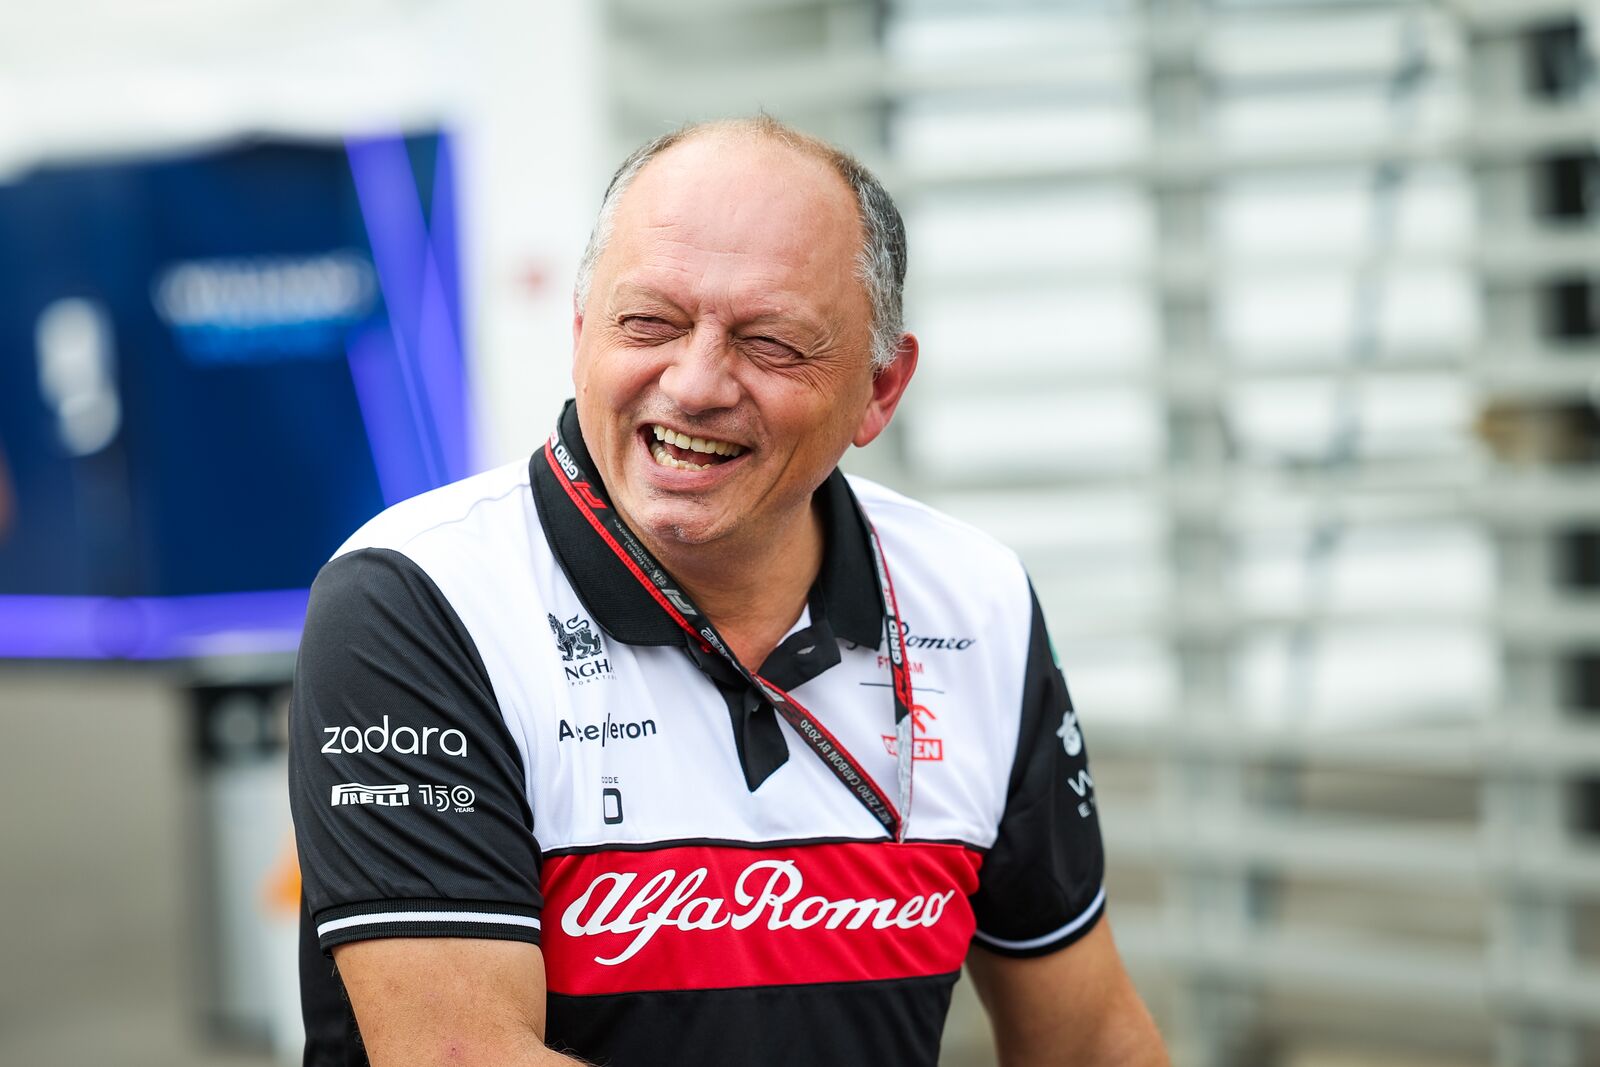 Fred Vasseur Appointed Team Principal of Scuderia Ferrari autoevolution